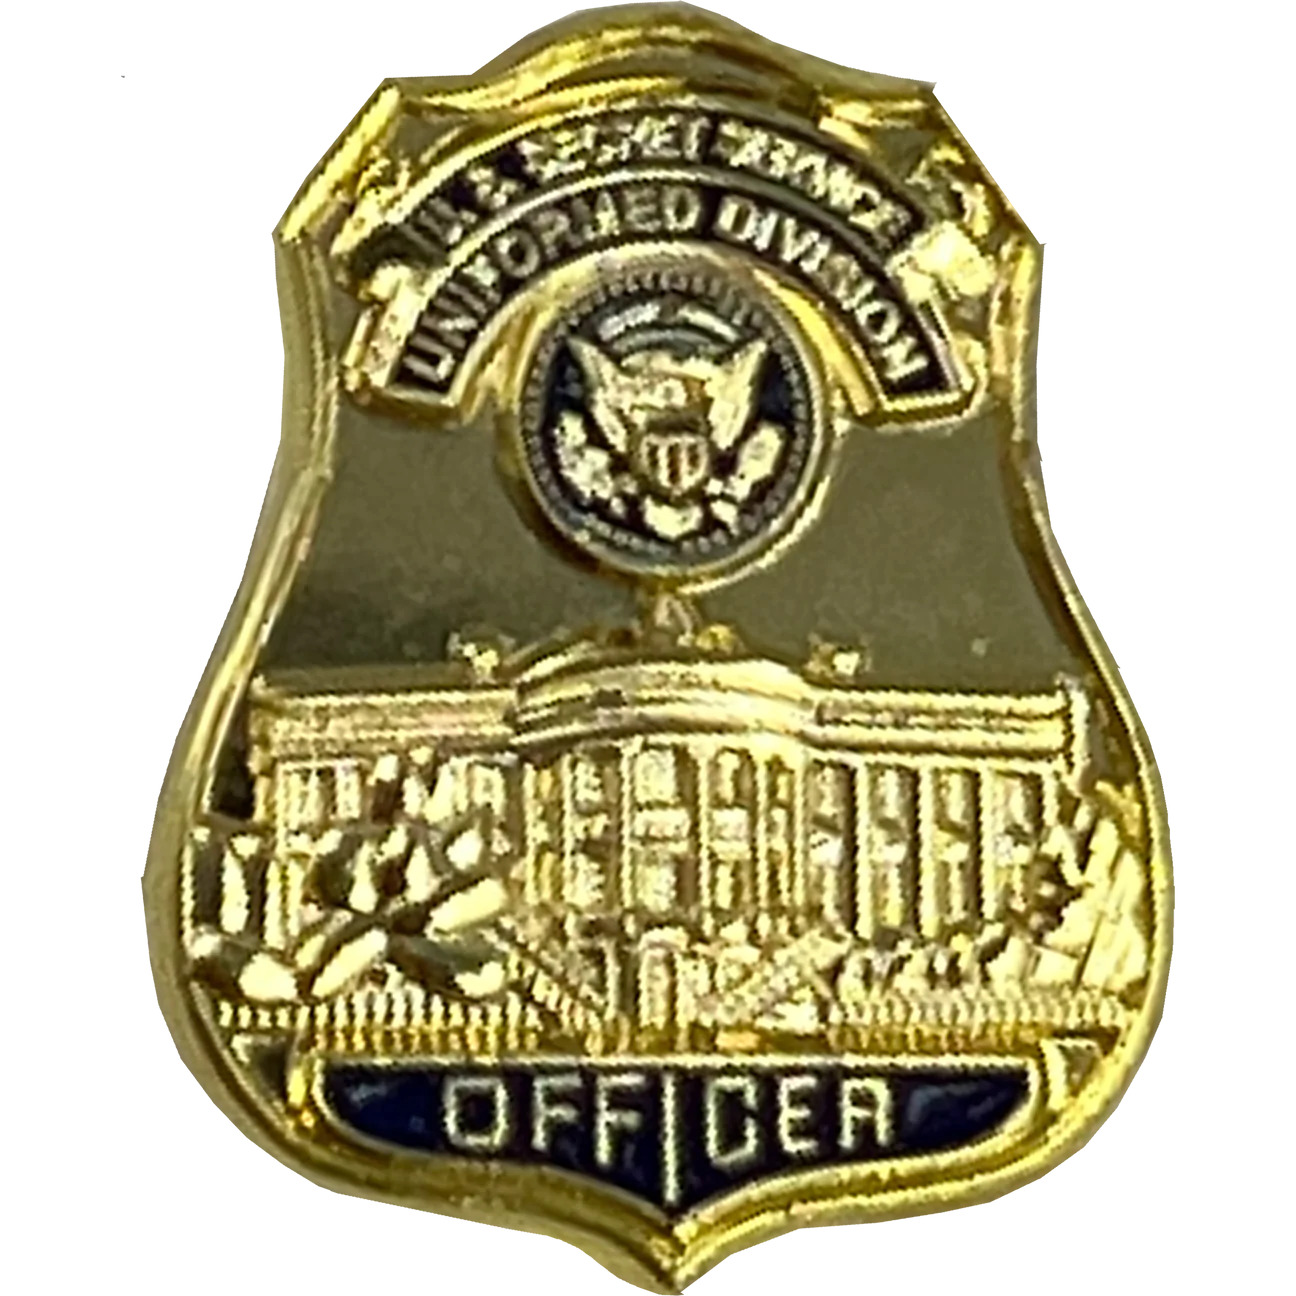 USSS US Secret Service Uniformed Division Officer Lapel Pin PBX-004-D P-007A